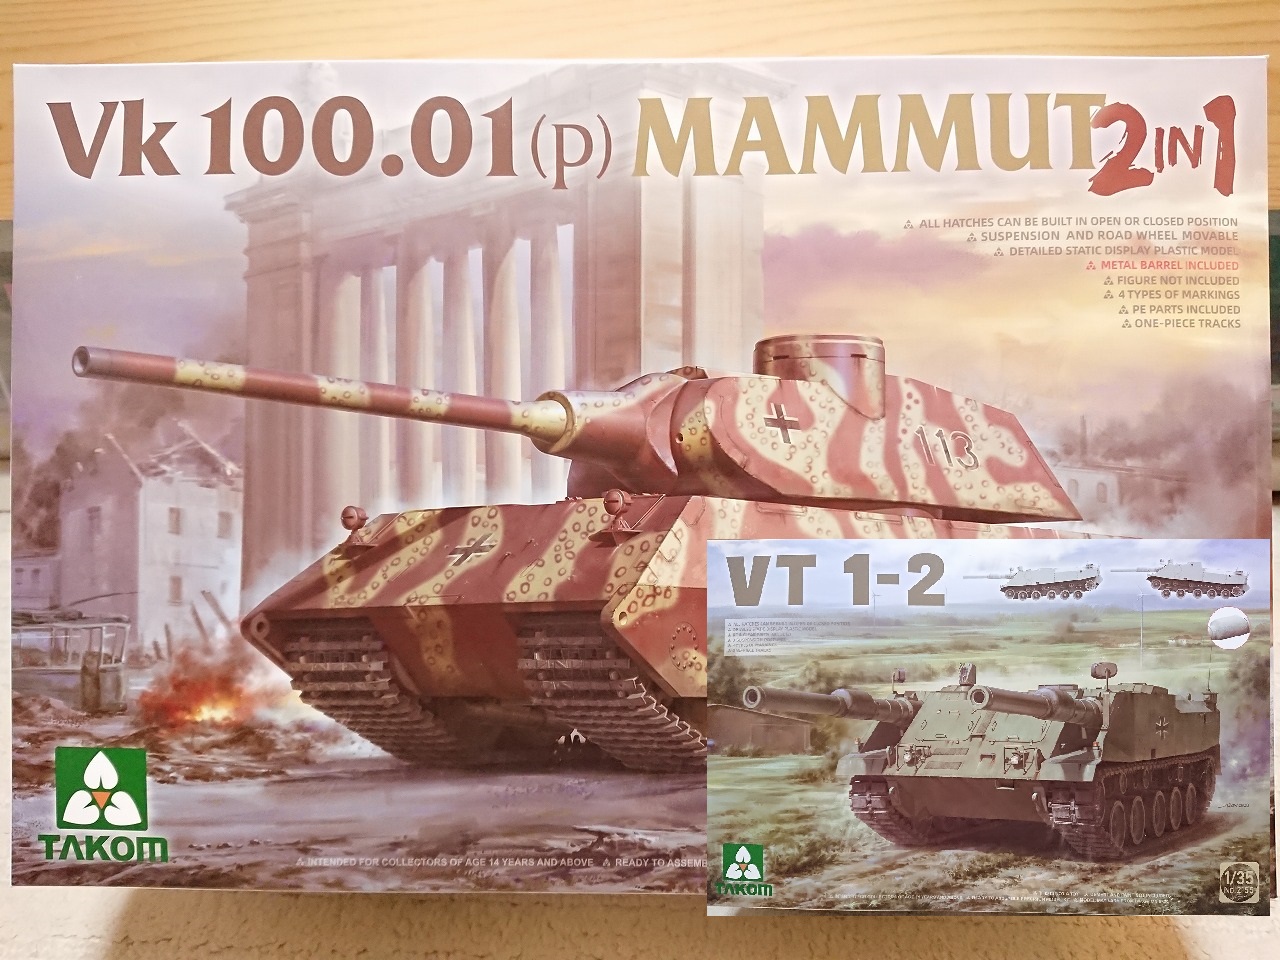 【最近購入した物】タコム 1/35スケール 西ドイツ軍 VT 1-2とVk 100.01(P) マムート